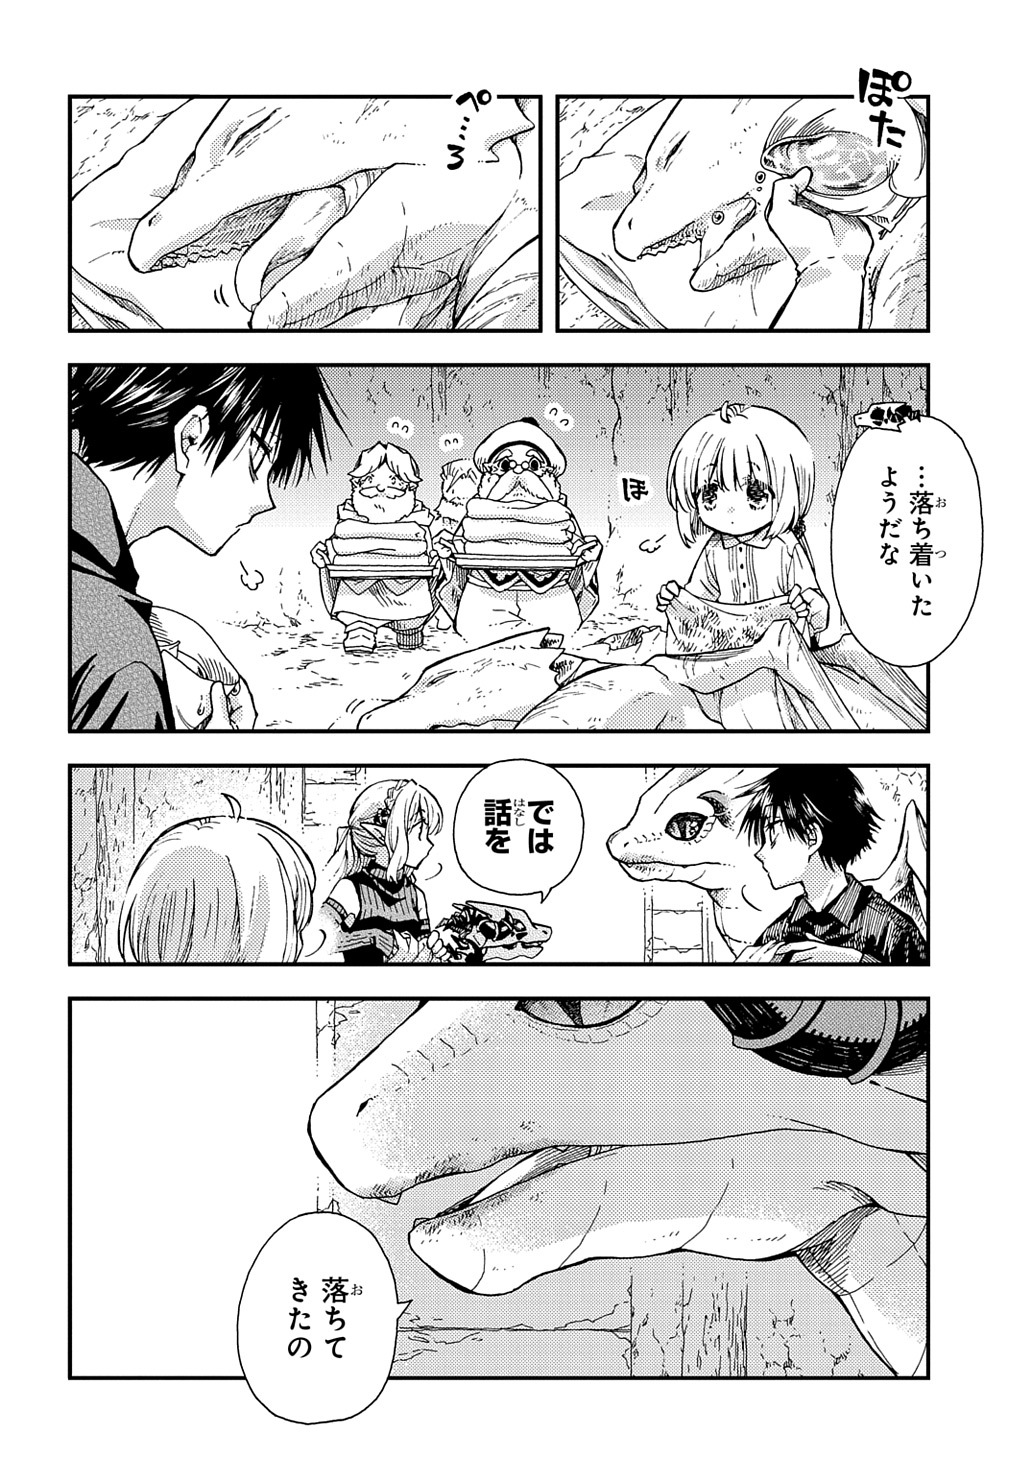 Hone Dragon no Mana Musume - Chapter 30.1 - Page 2